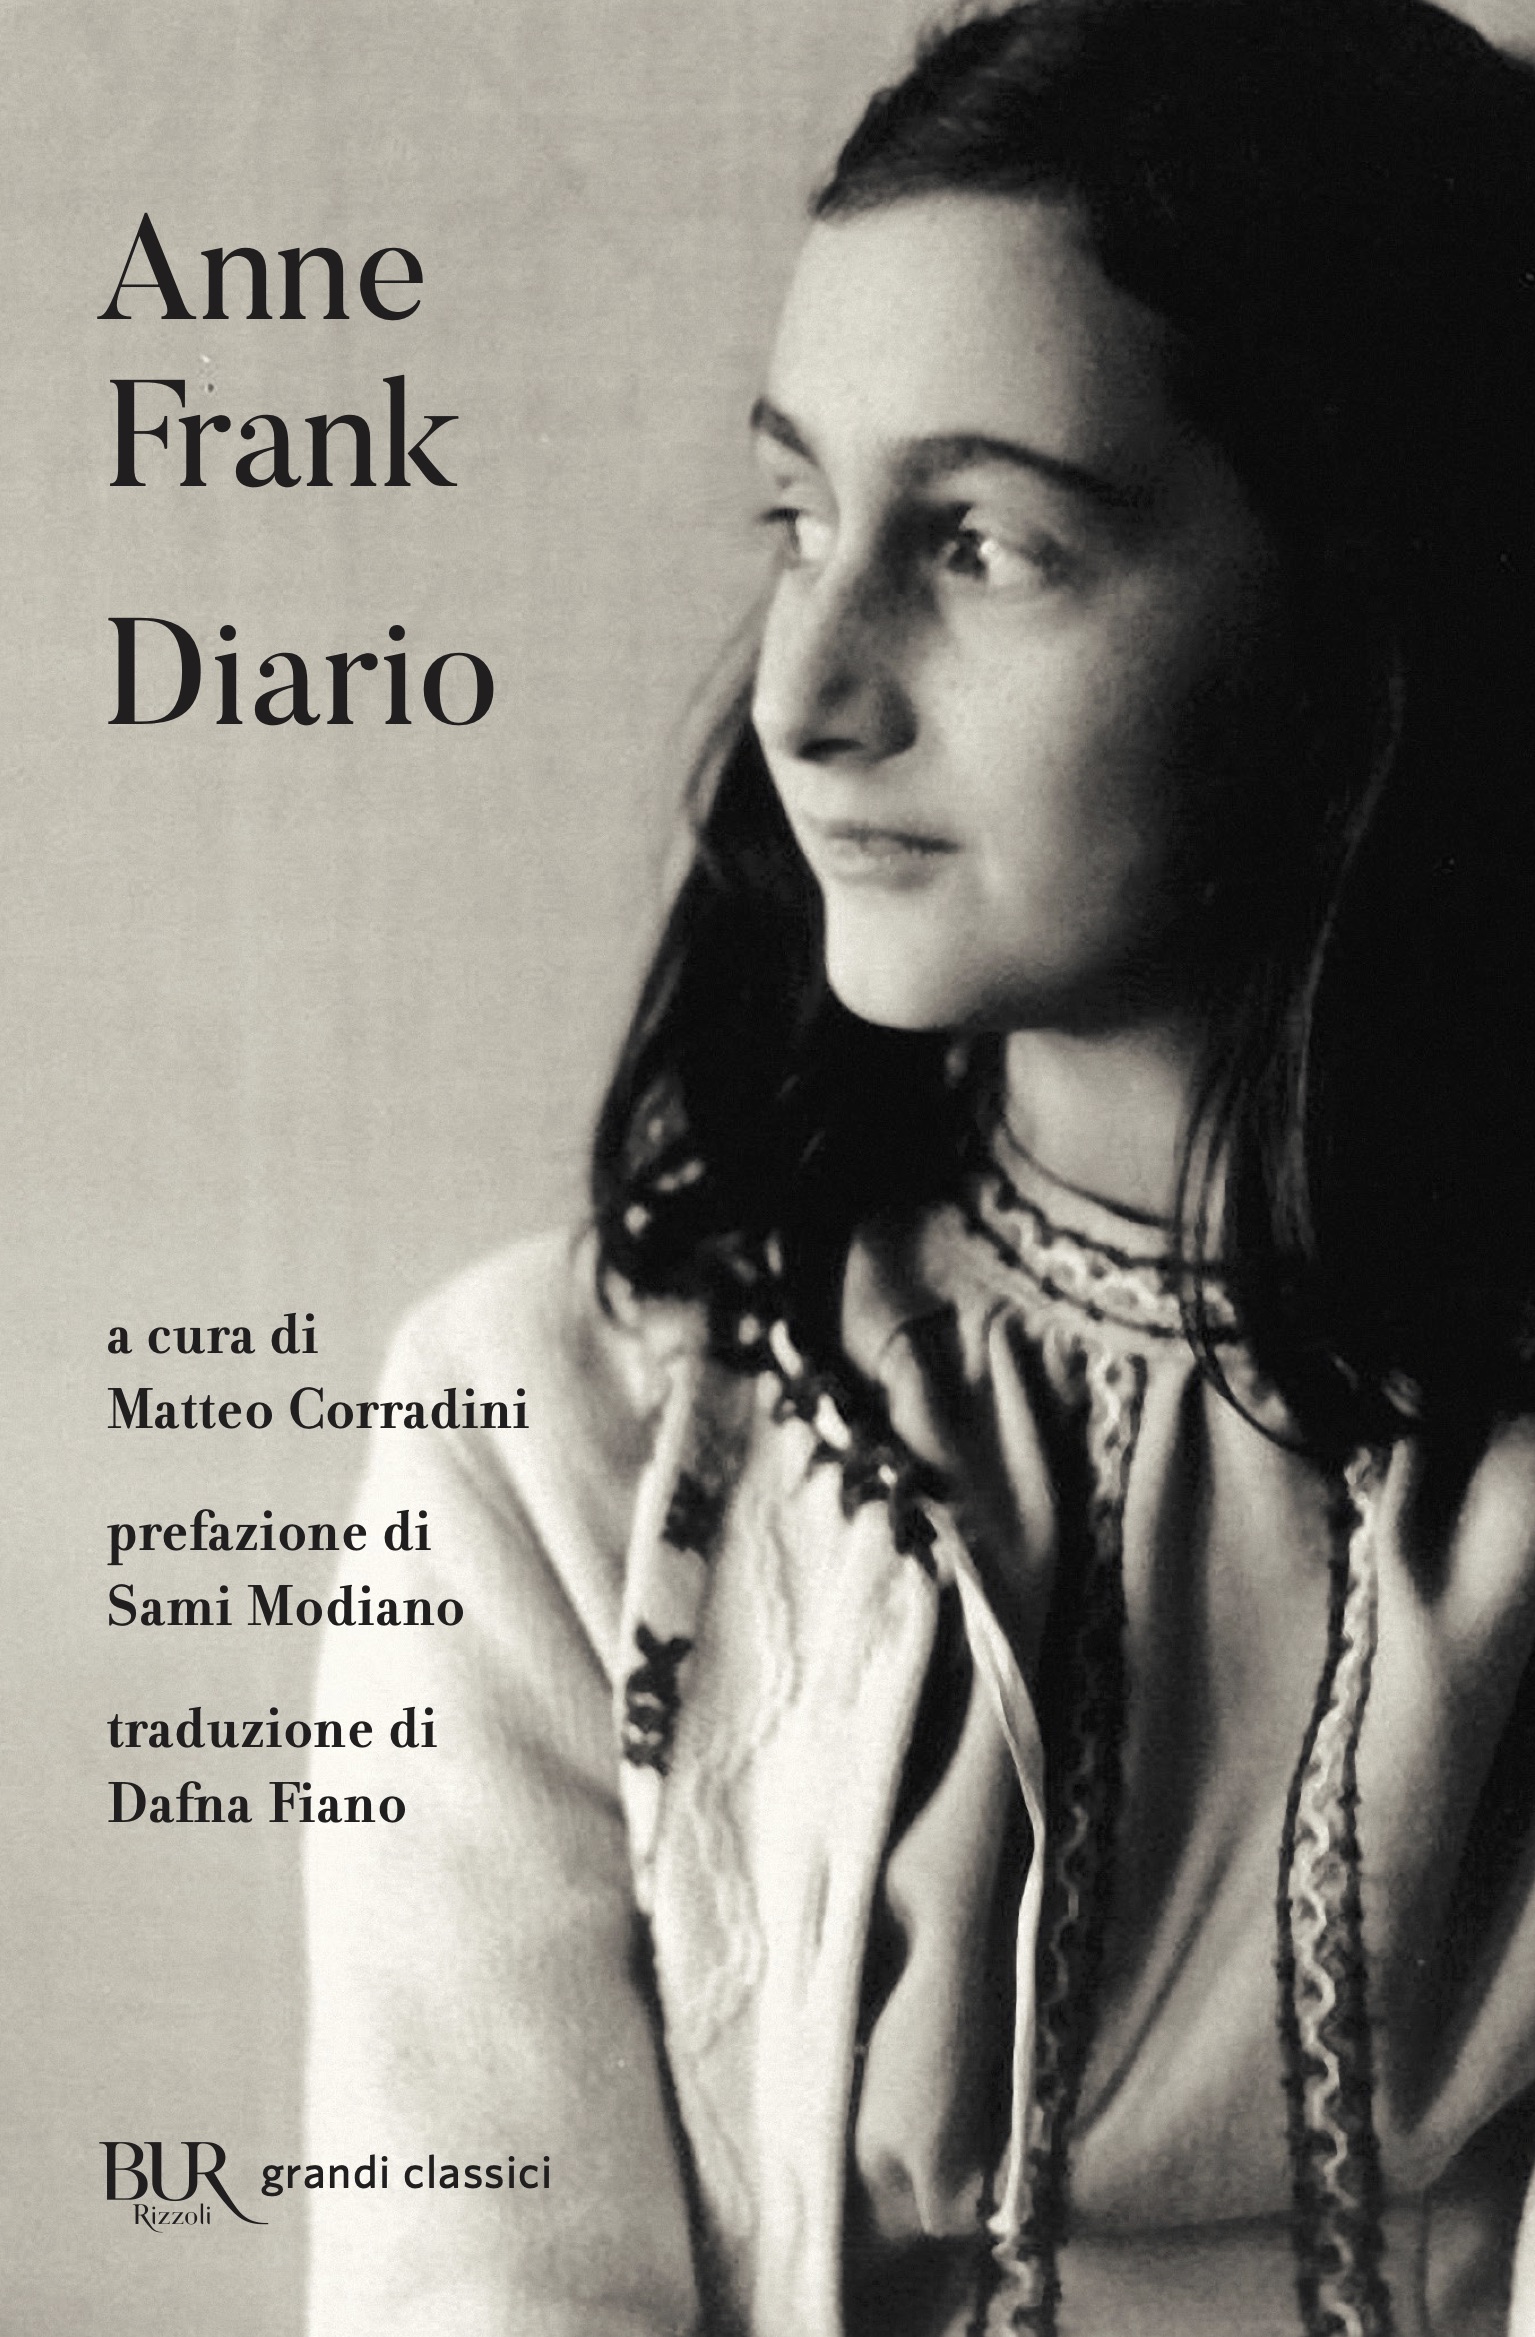 Anne Frank, Diario